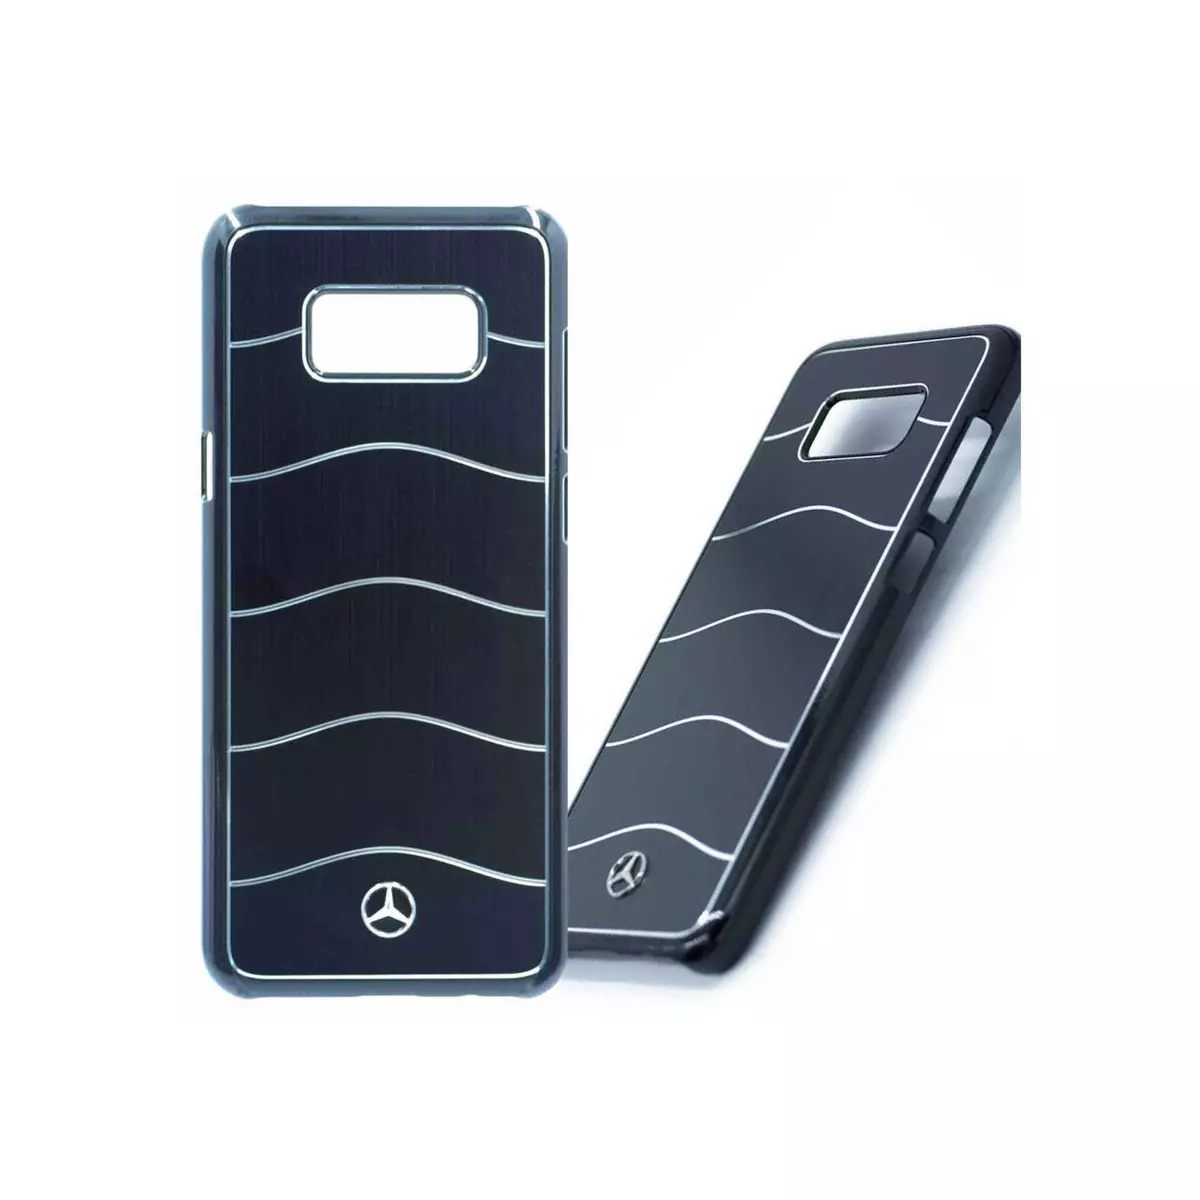 MERCEDES Coque Galaxy S8+ logo Mercedes métal brossé noir